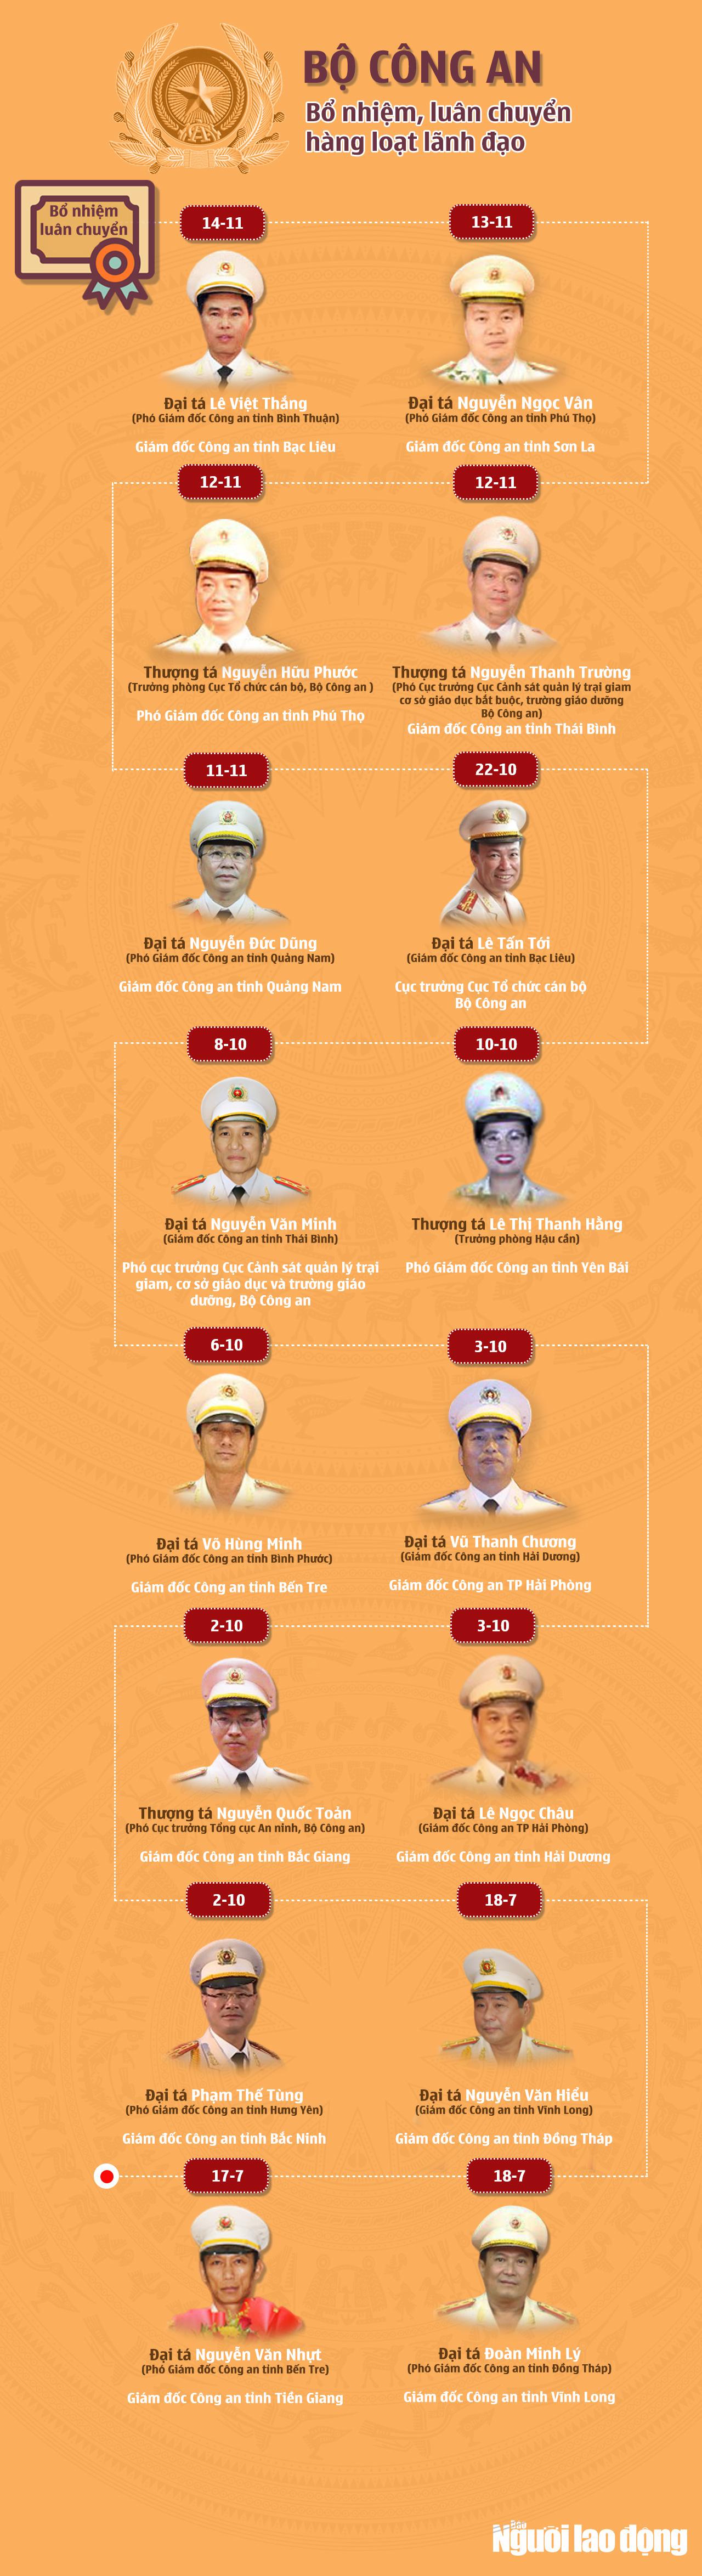 [Infographic] Bộ Công an bổ nhiệm, luân chuyển hàng loạt lãnh đạo - 1